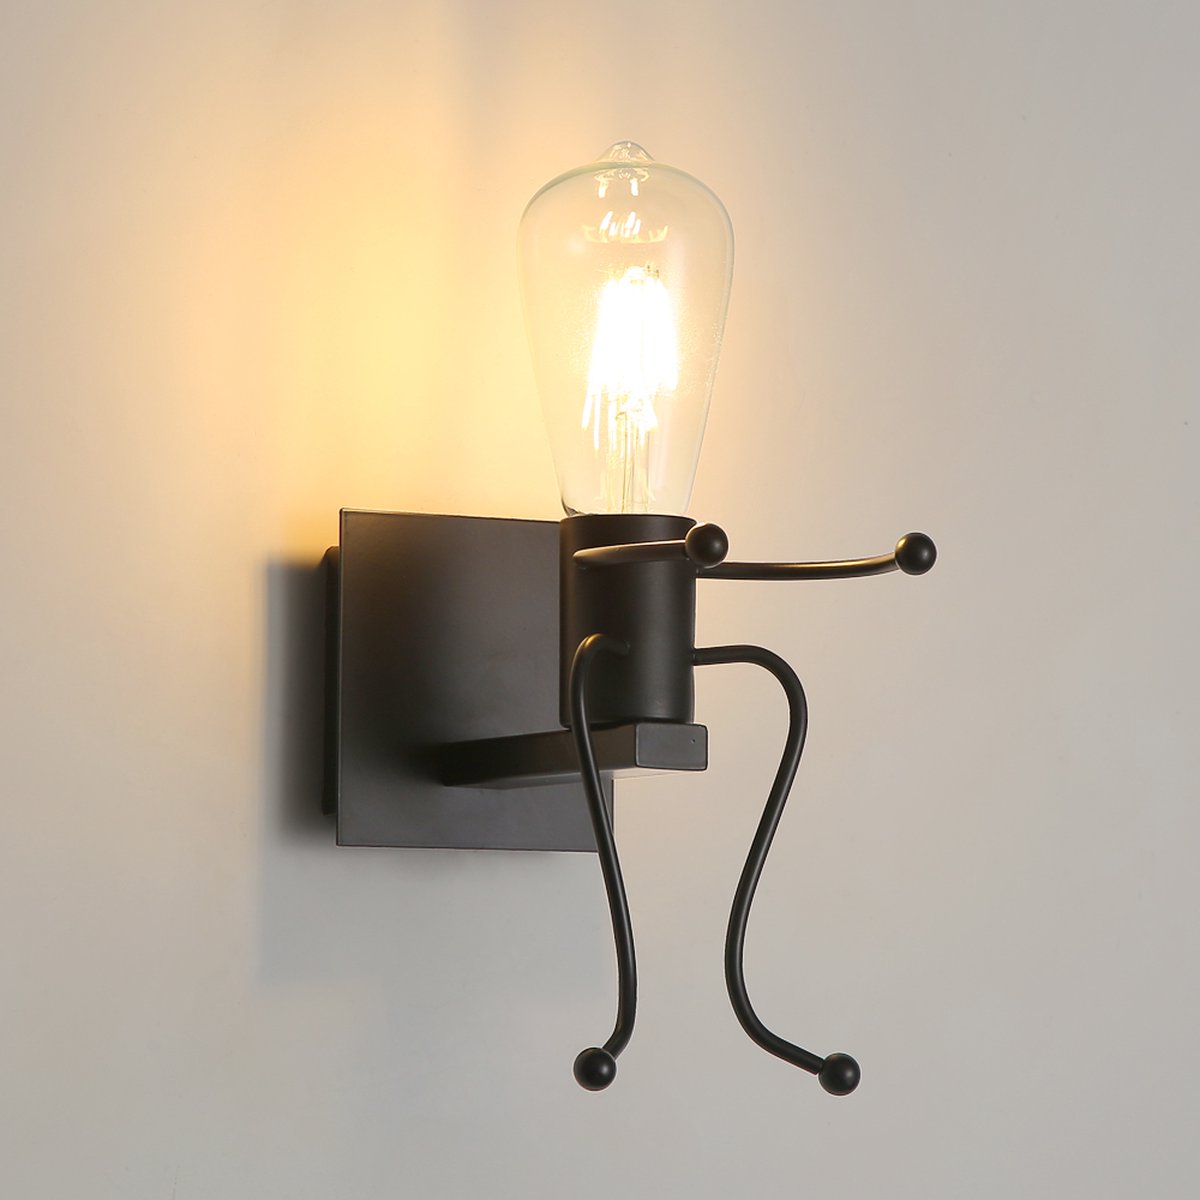 Delaveek-Humanoid Vintage industriële binnen wandlamp - Zwart- E27 - Metaal (armatuur niet inbegrepen)